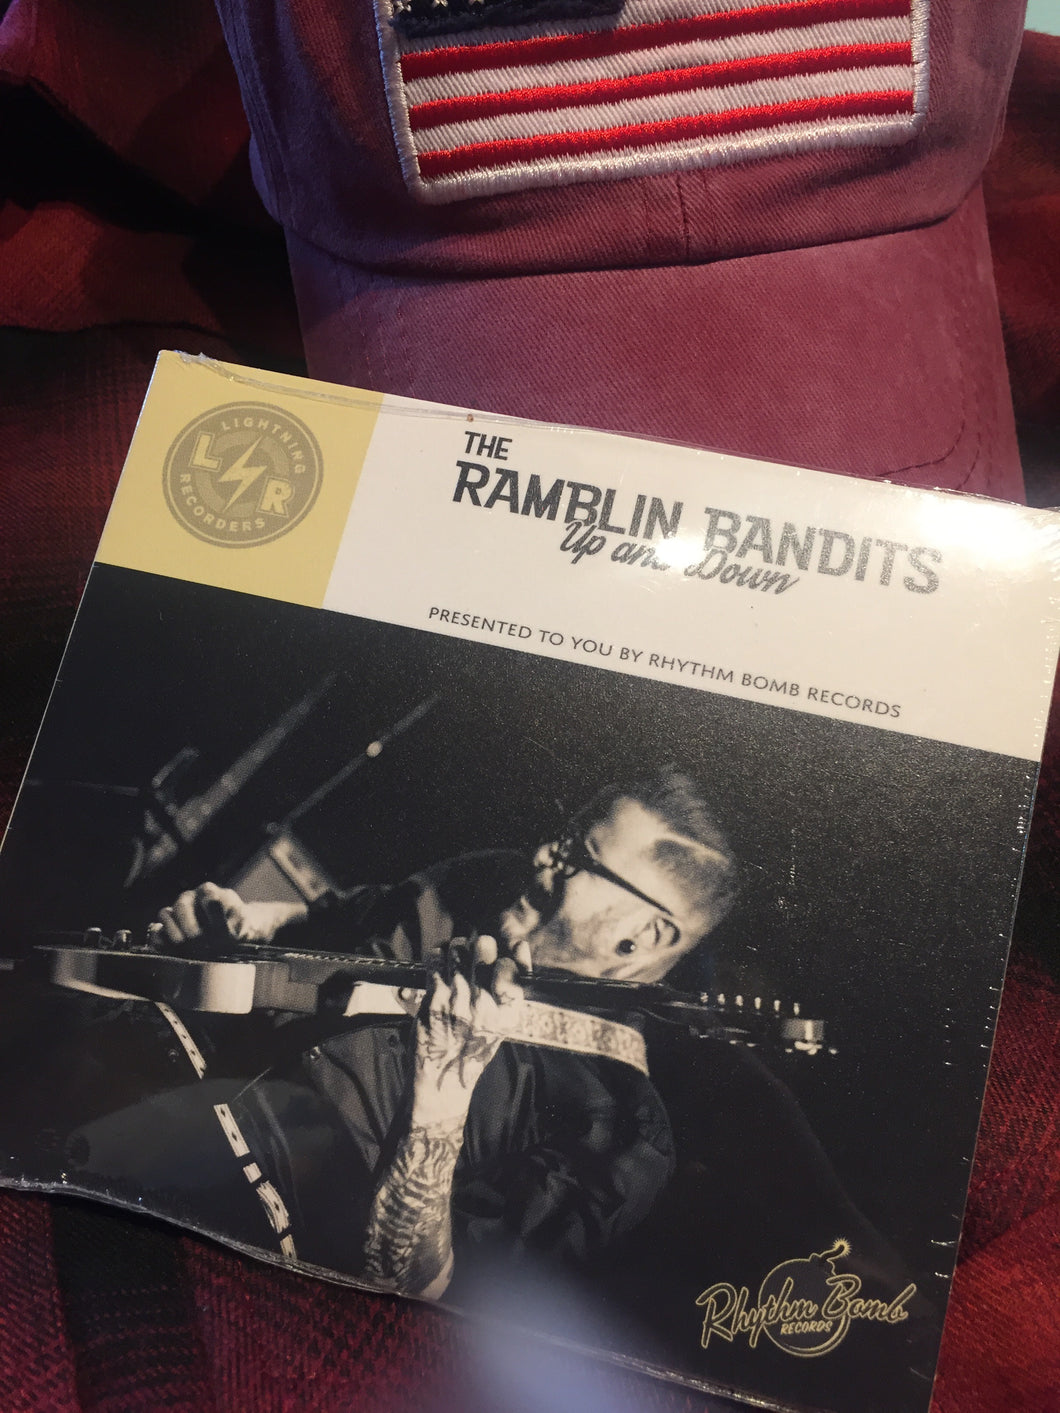 The Ramblin Bandits - Up and Down CD